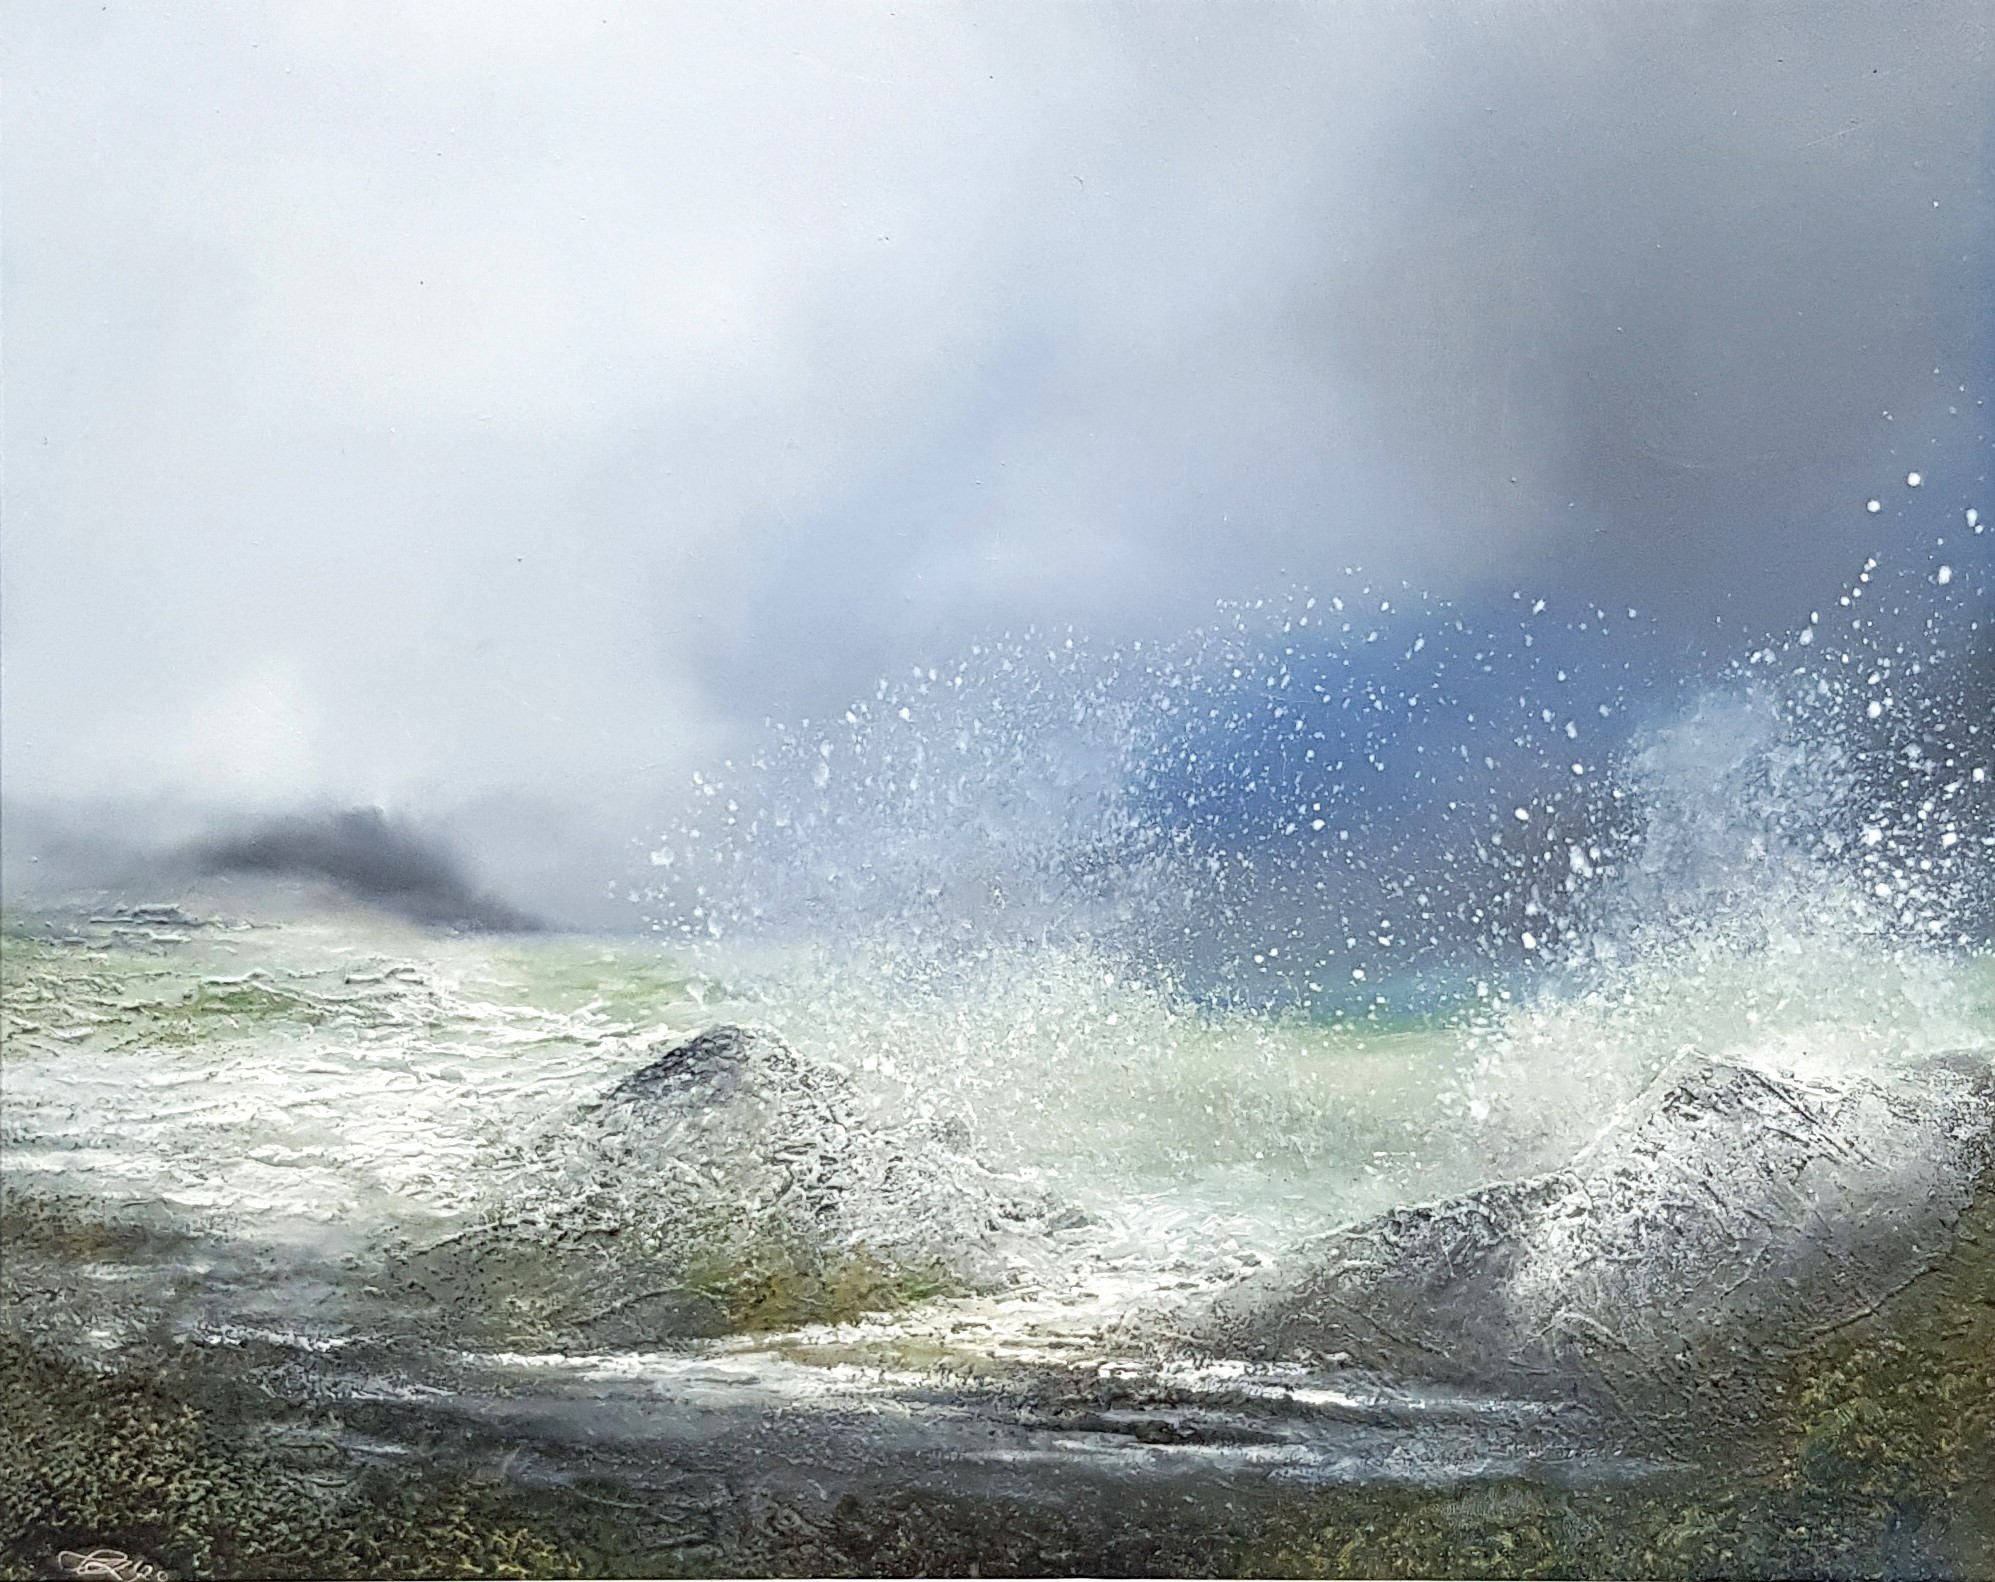 'Loch Bracadale Storm, Isle of Skye' by artist Peter Dworok